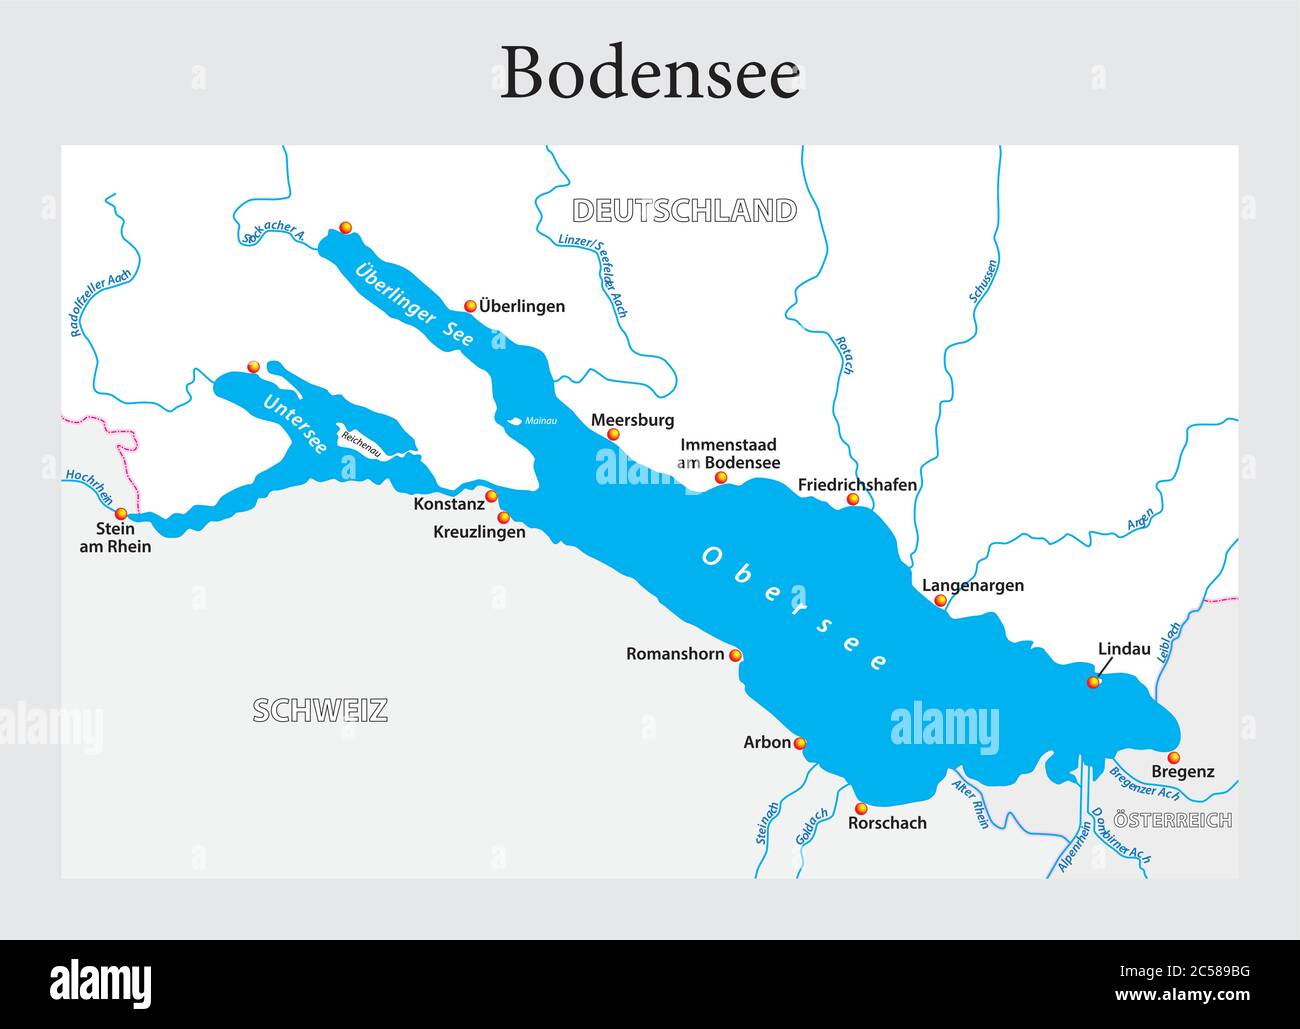 Kleine Übersichtskarte des Bodensees in deutscher Sprache Stock Vektor